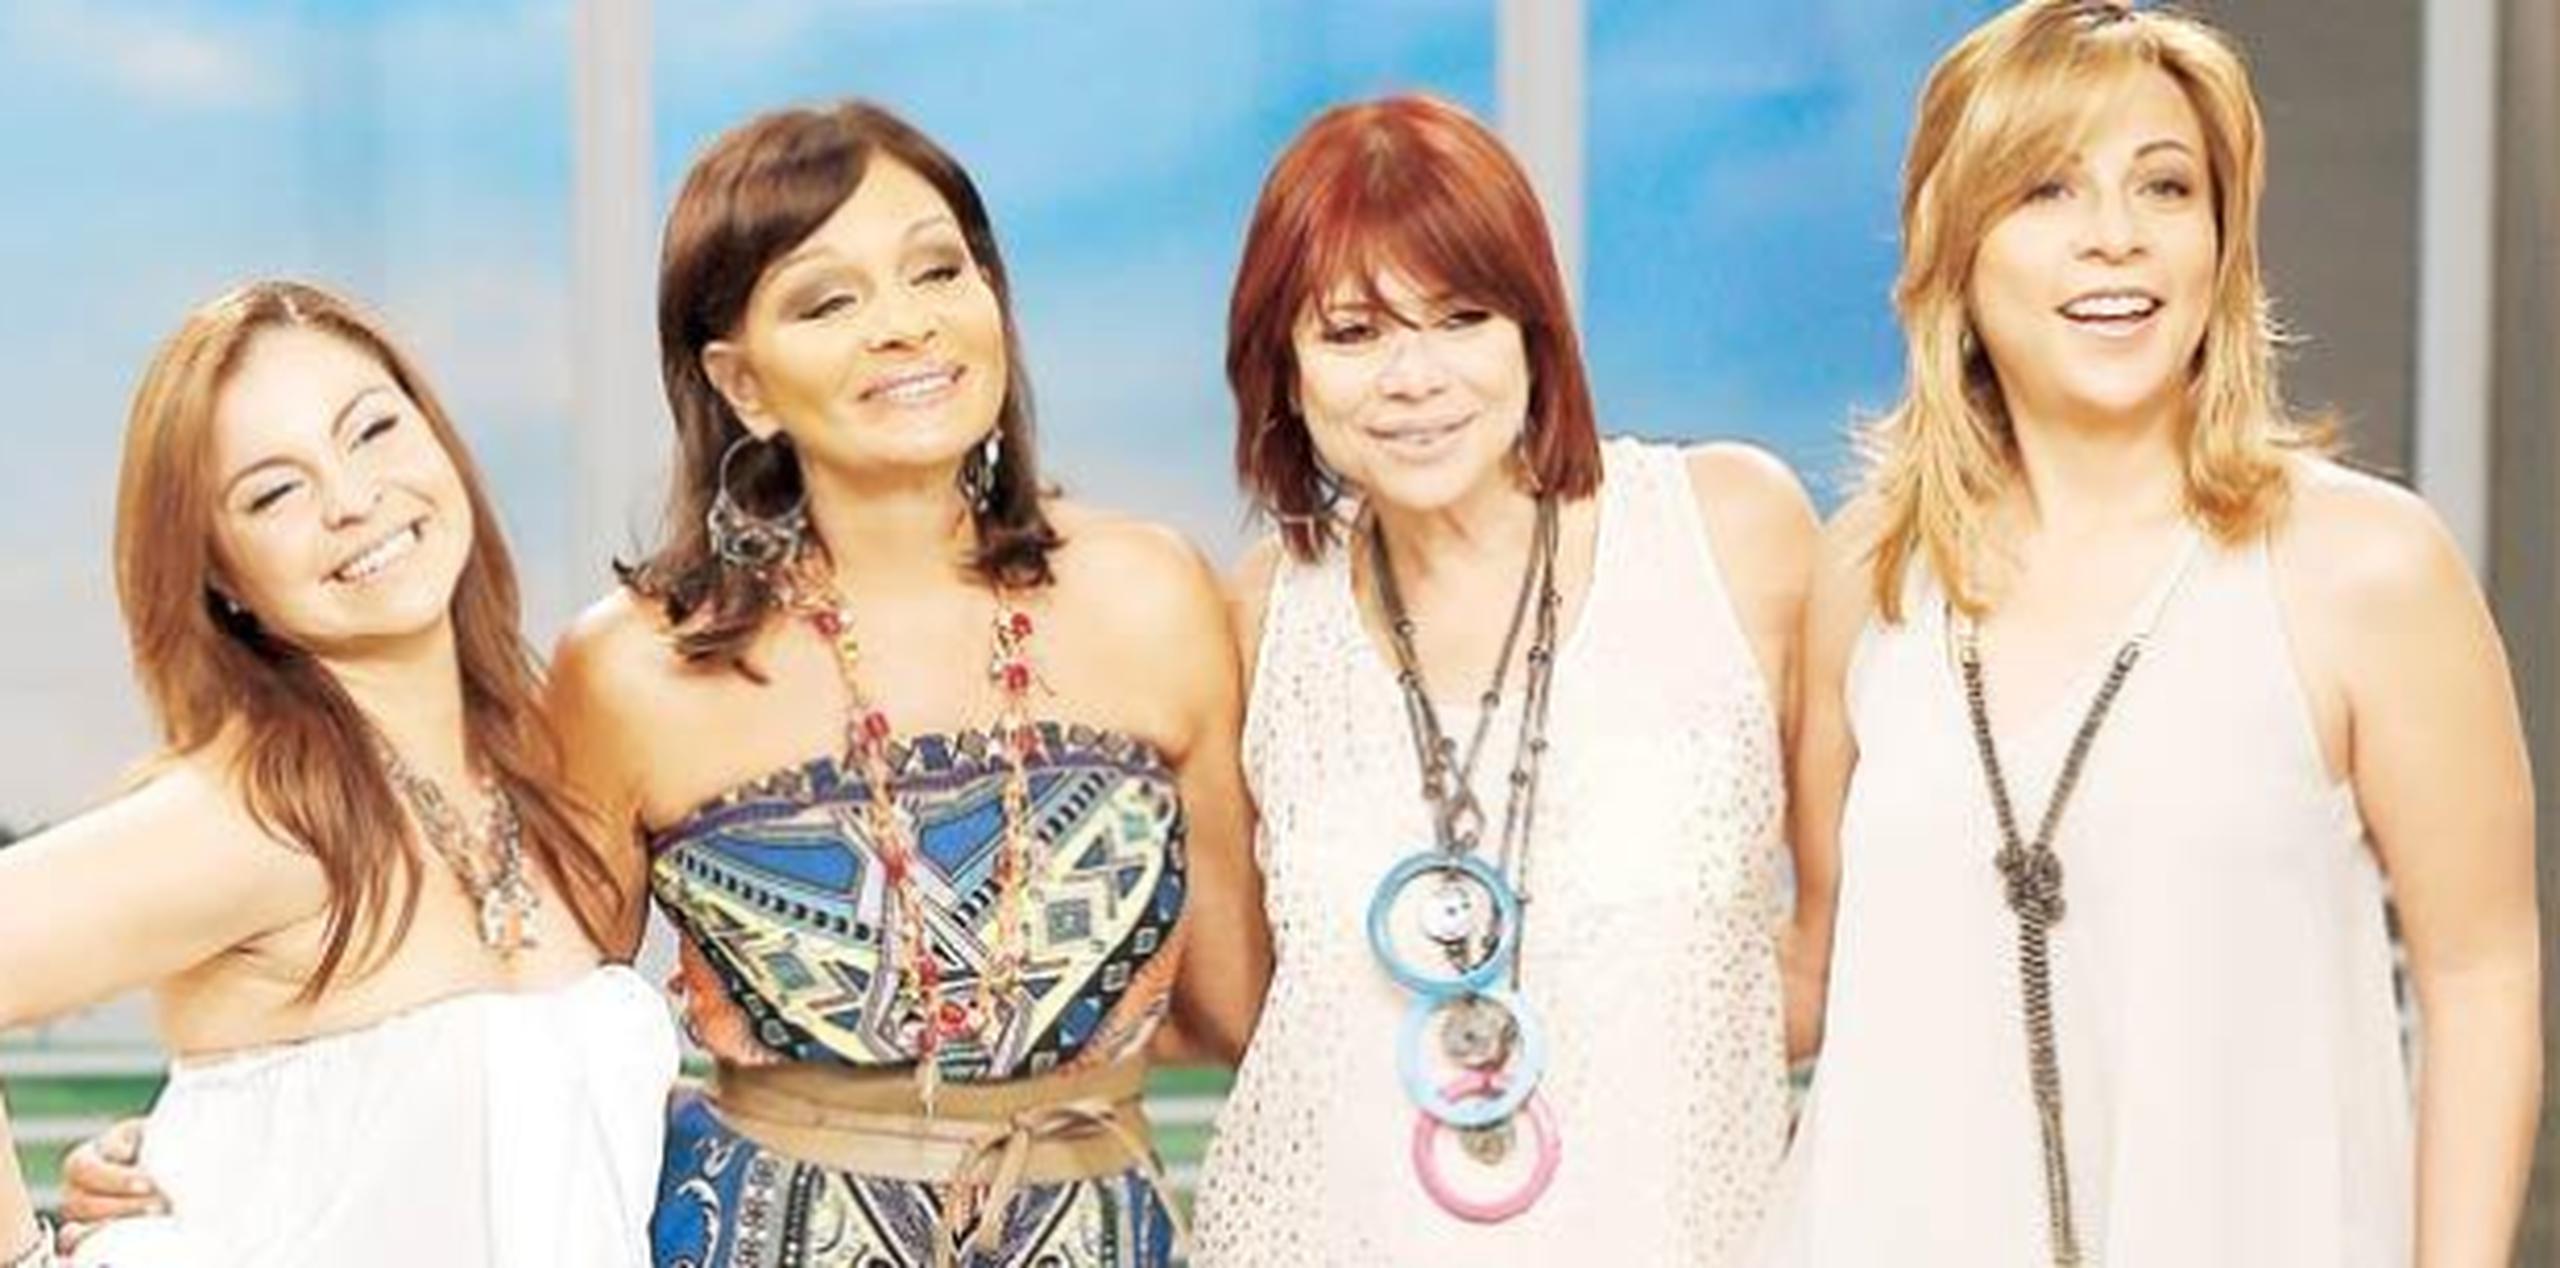 Wanda Saiz, Alba Nydia Díaz, Linette Torres y Sonia Valentín en mejores tiempos. (Archivo)